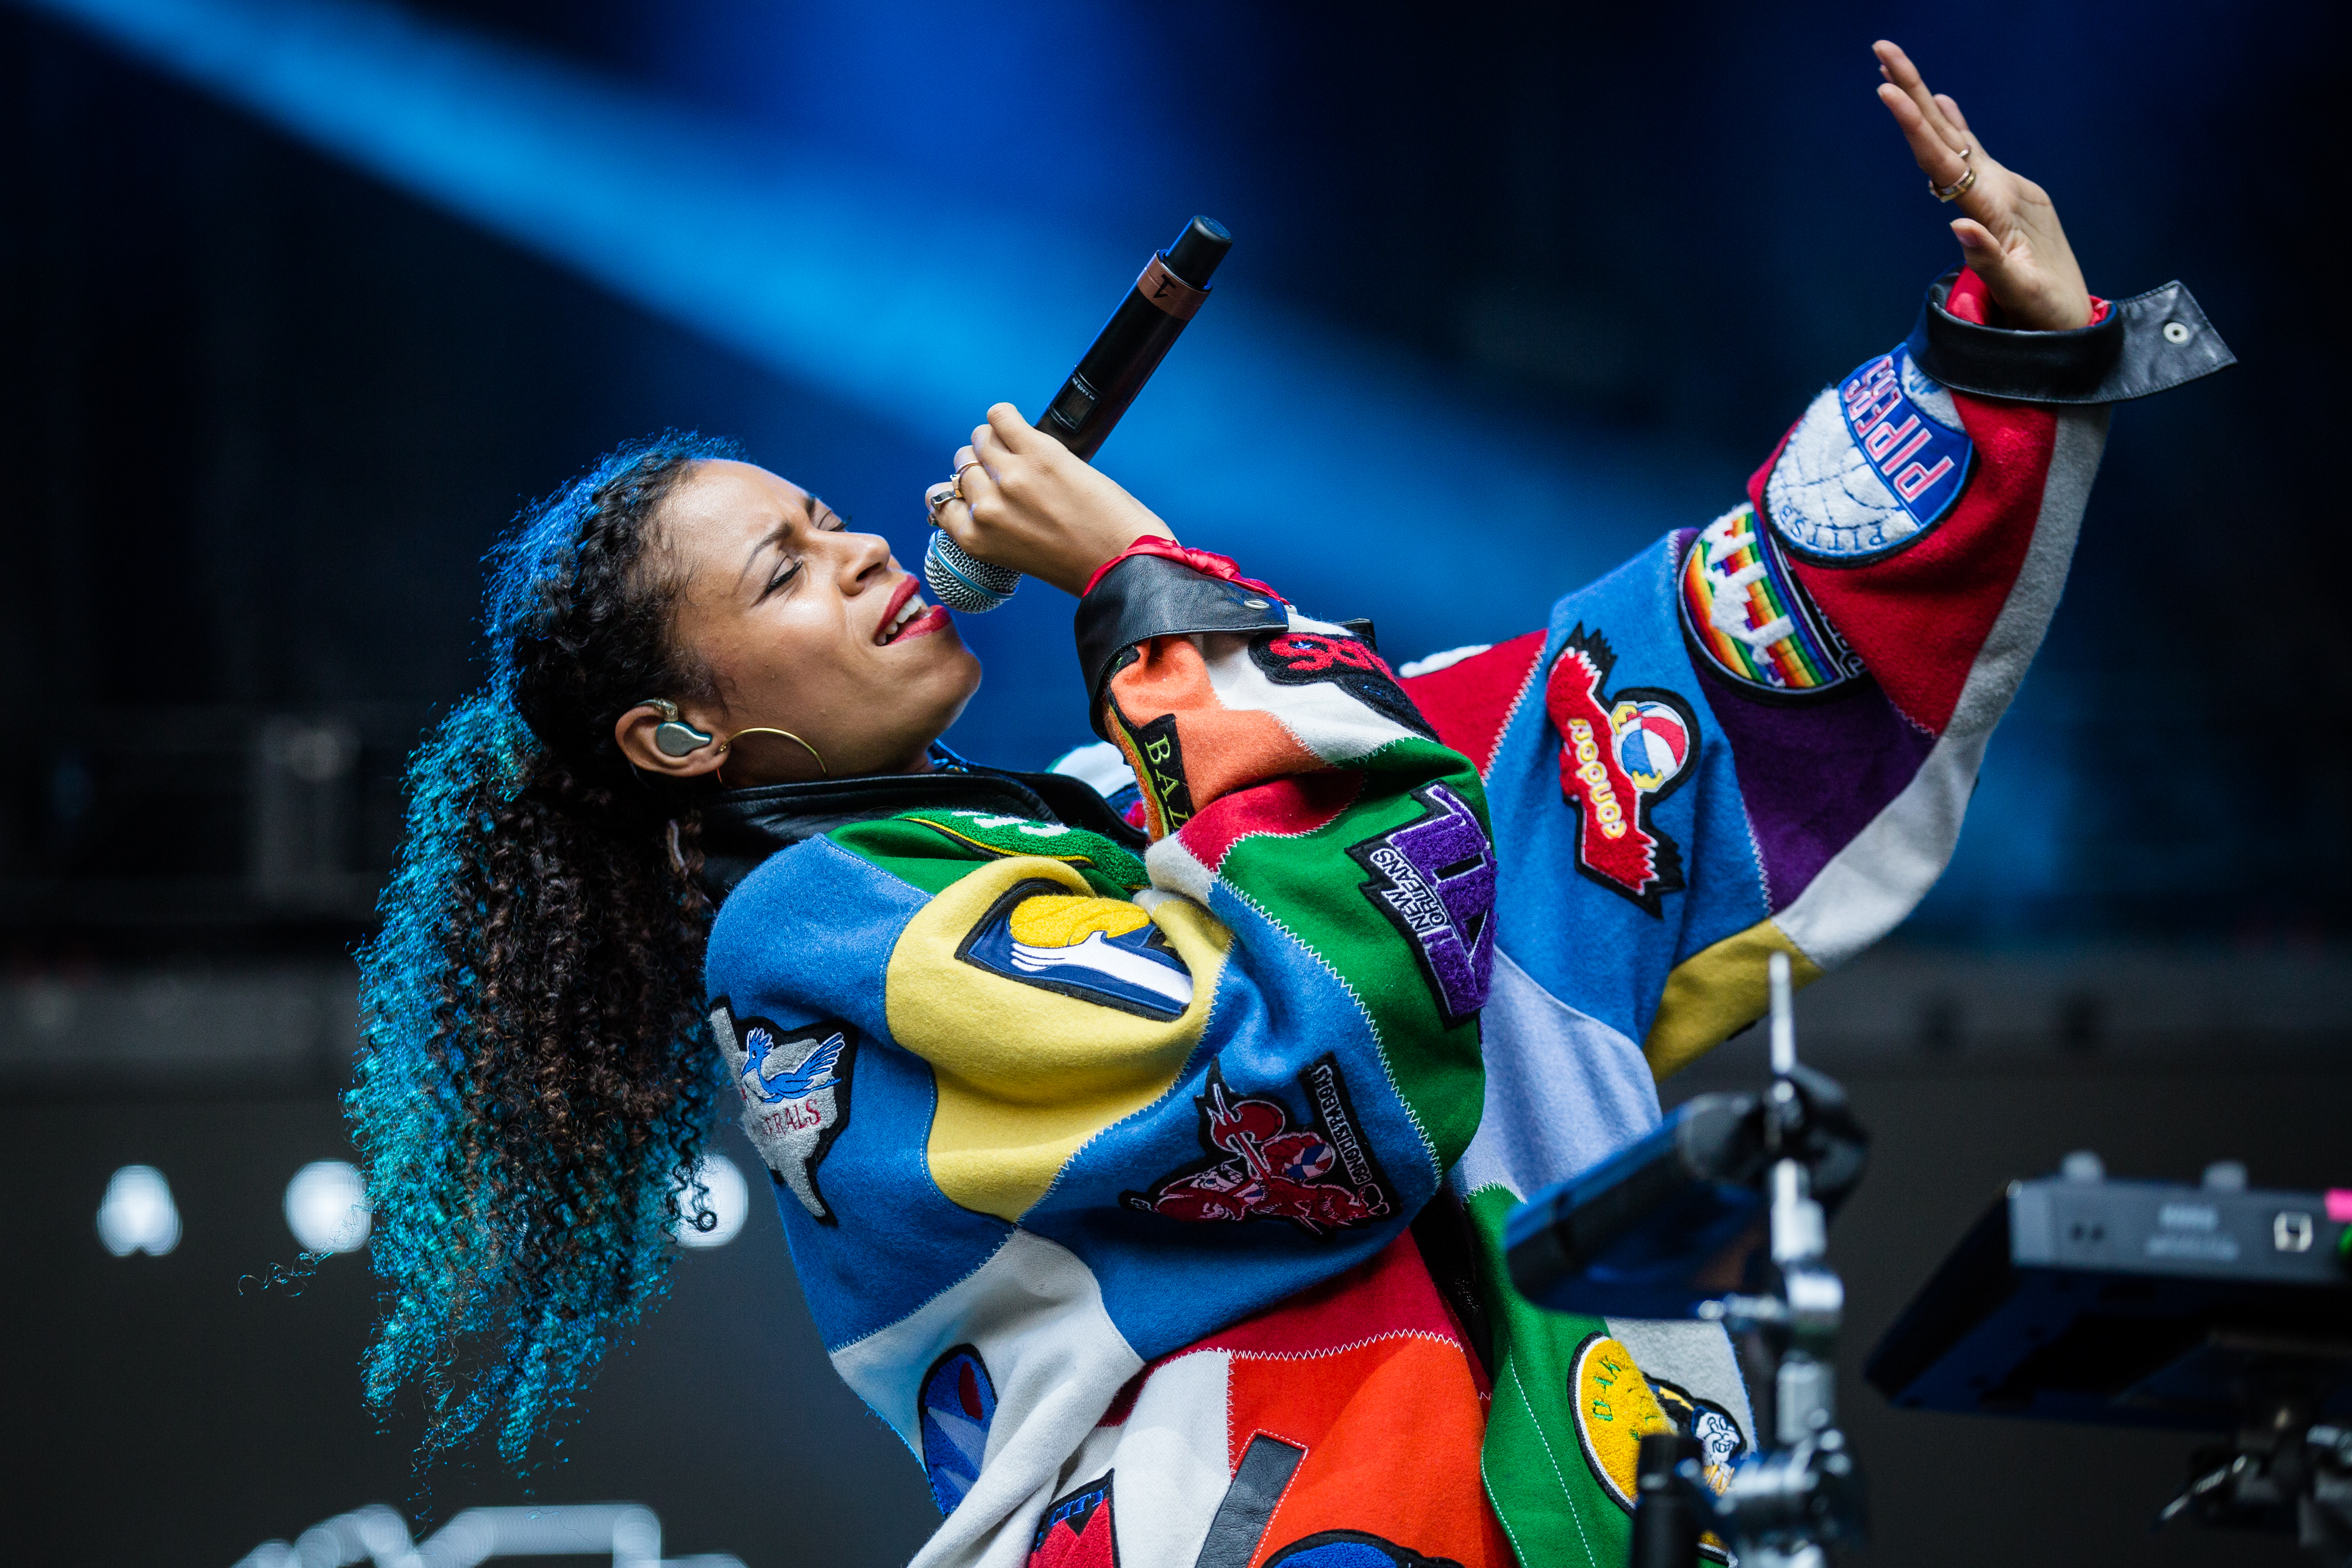 Grammys 2018: Watch Rihanna, DJ Khaled, and Bryson Tiller Perform “Wild Thoughts”